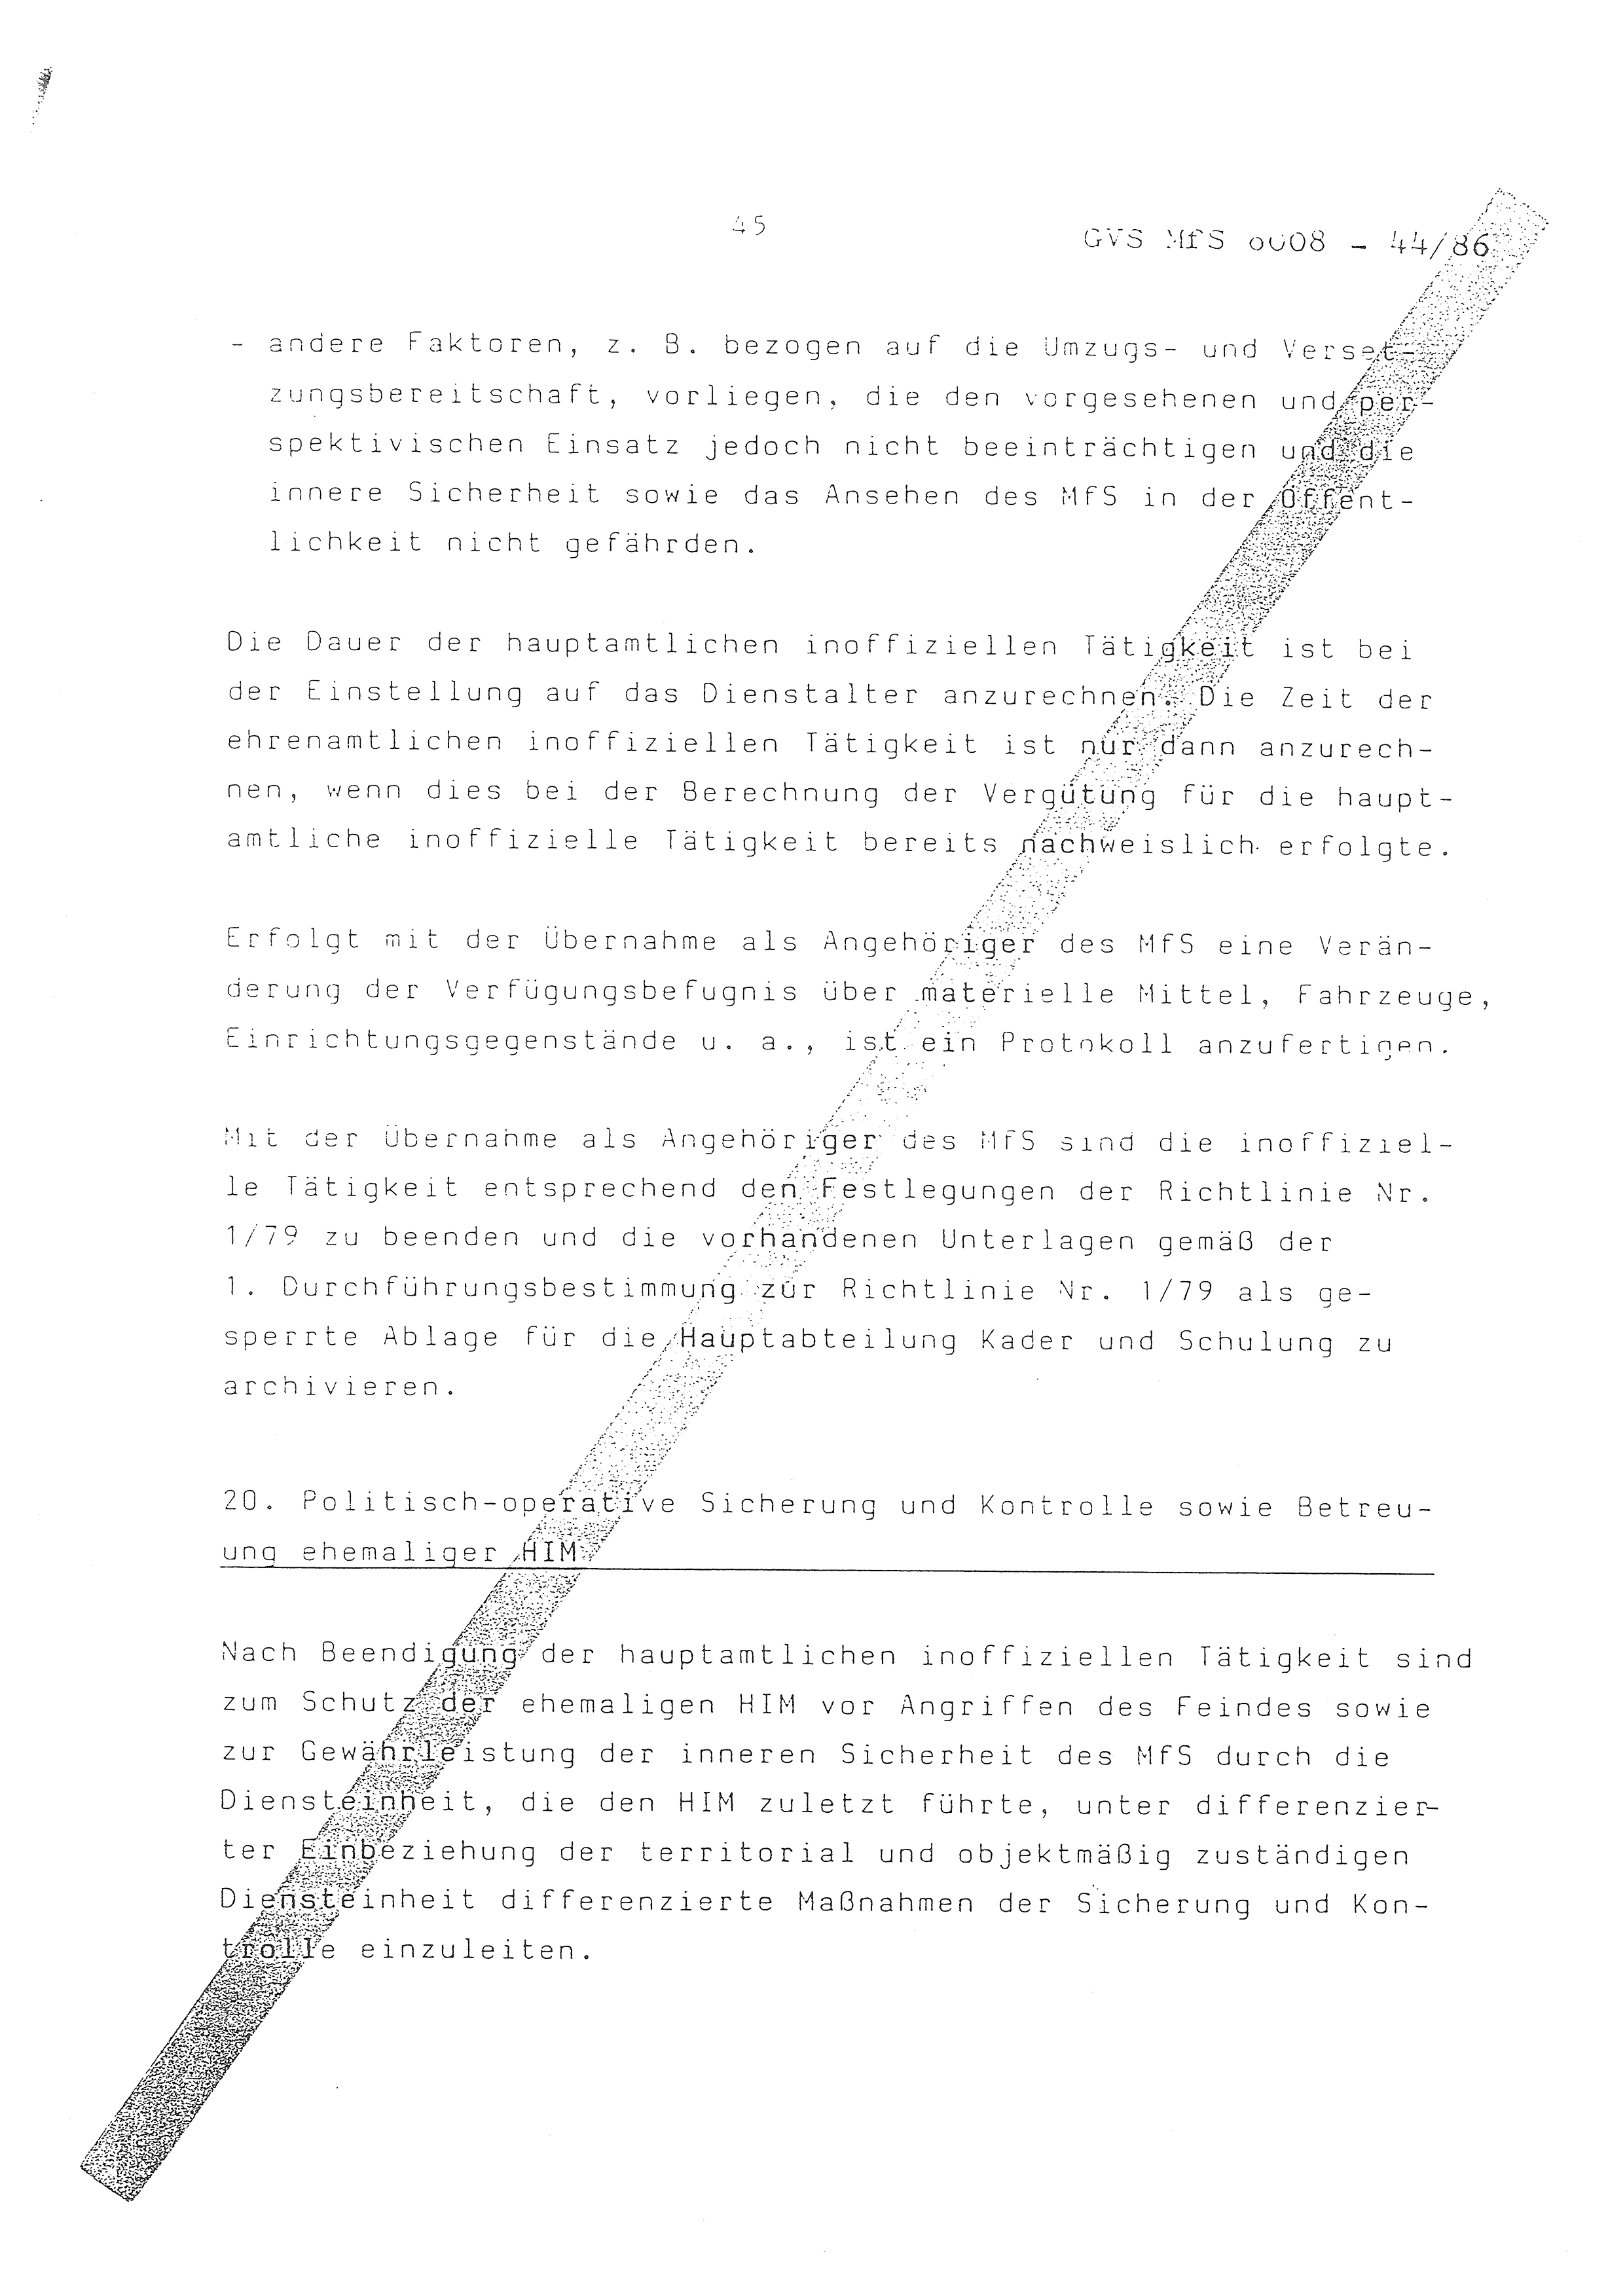 2. Durchführungsbestimmung zur Richtlinie 1/79 über die Arbeit mit hauptamtlichen Mitarbeitern des MfS (HIM), Deutsche Demokratische Republik (DDR), Ministerium für Staatssicherheit (MfS), Der Minister (Mielke), Geheime Verschlußsache (GVS) ooo8-44/86, Berlin 1986, Seite 45 (2. DB RL 1/79 DDR MfS Min. GVS ooo8-44/86 1986, S. 45)